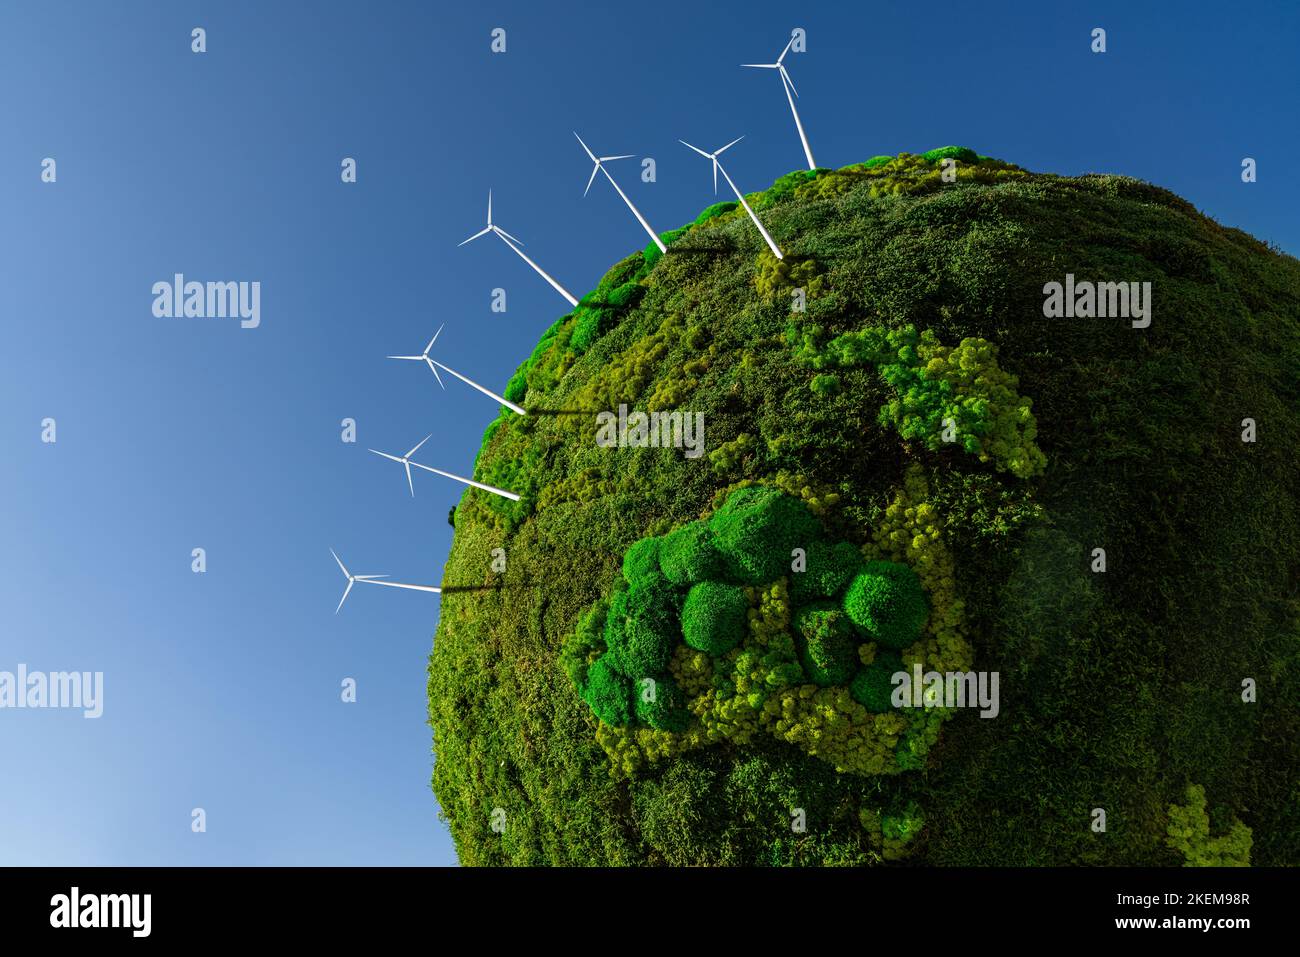 Terra pulita immagini e fotografie stock ad alta risoluzione - Alamy